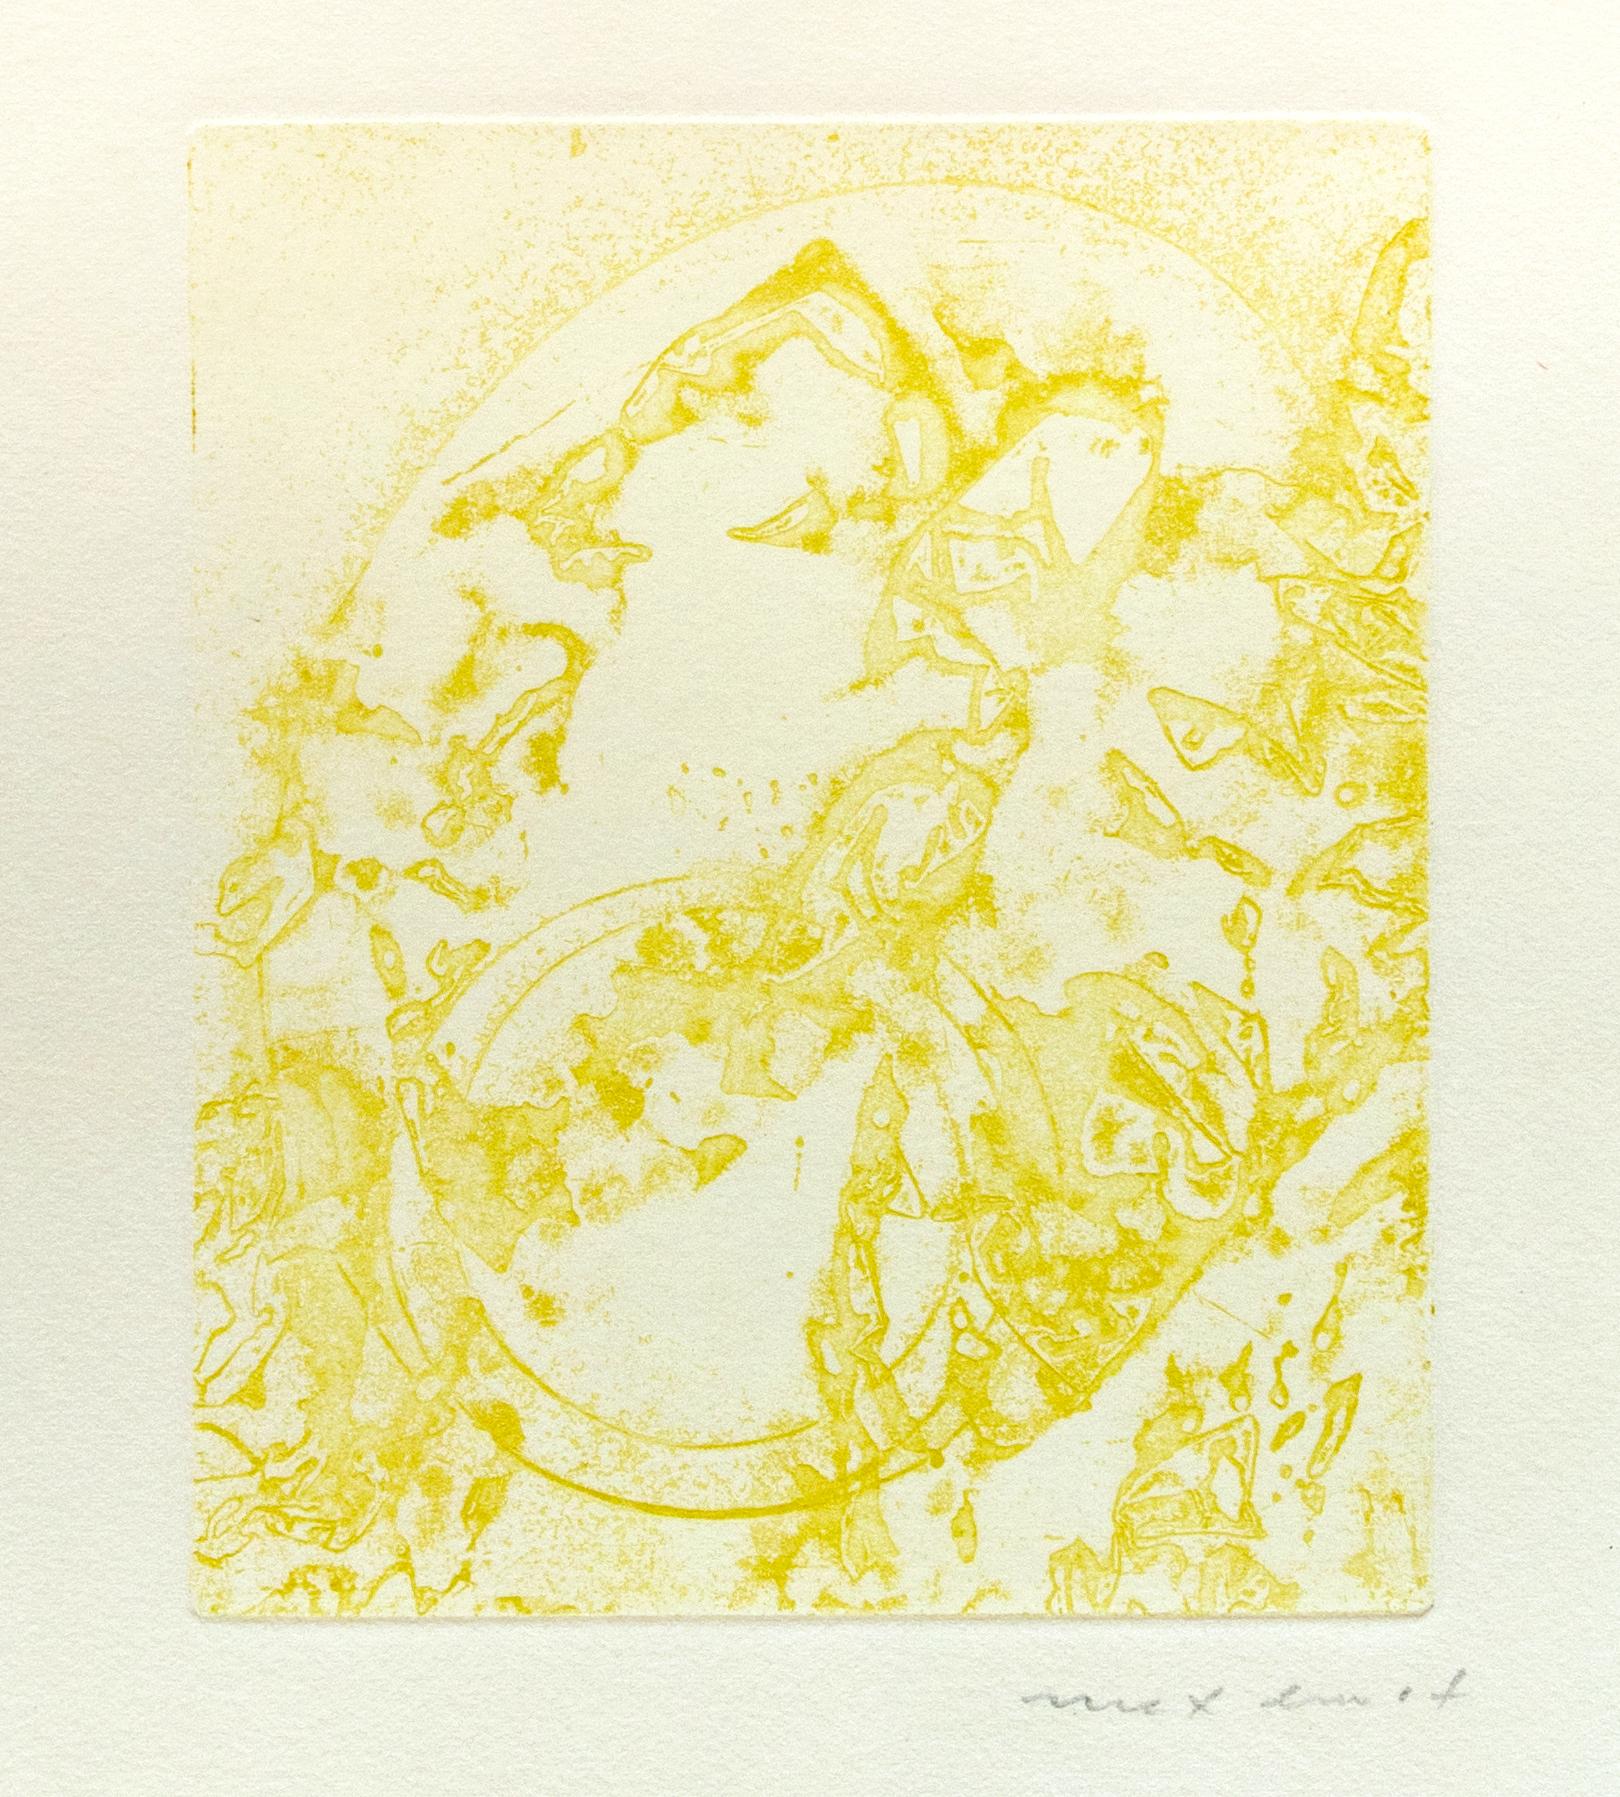 "Hölderlin : Poèmes " est une gravure signée à la main réalisée par Max Ernst en 1961. Il présente de très bonnes conditions. Passepartout inclus : 49 x 34 cm.

Bibliographie : Catalogue Brusberg n. 86 BP.

D'abord militant de DADA en Allemagne, Max